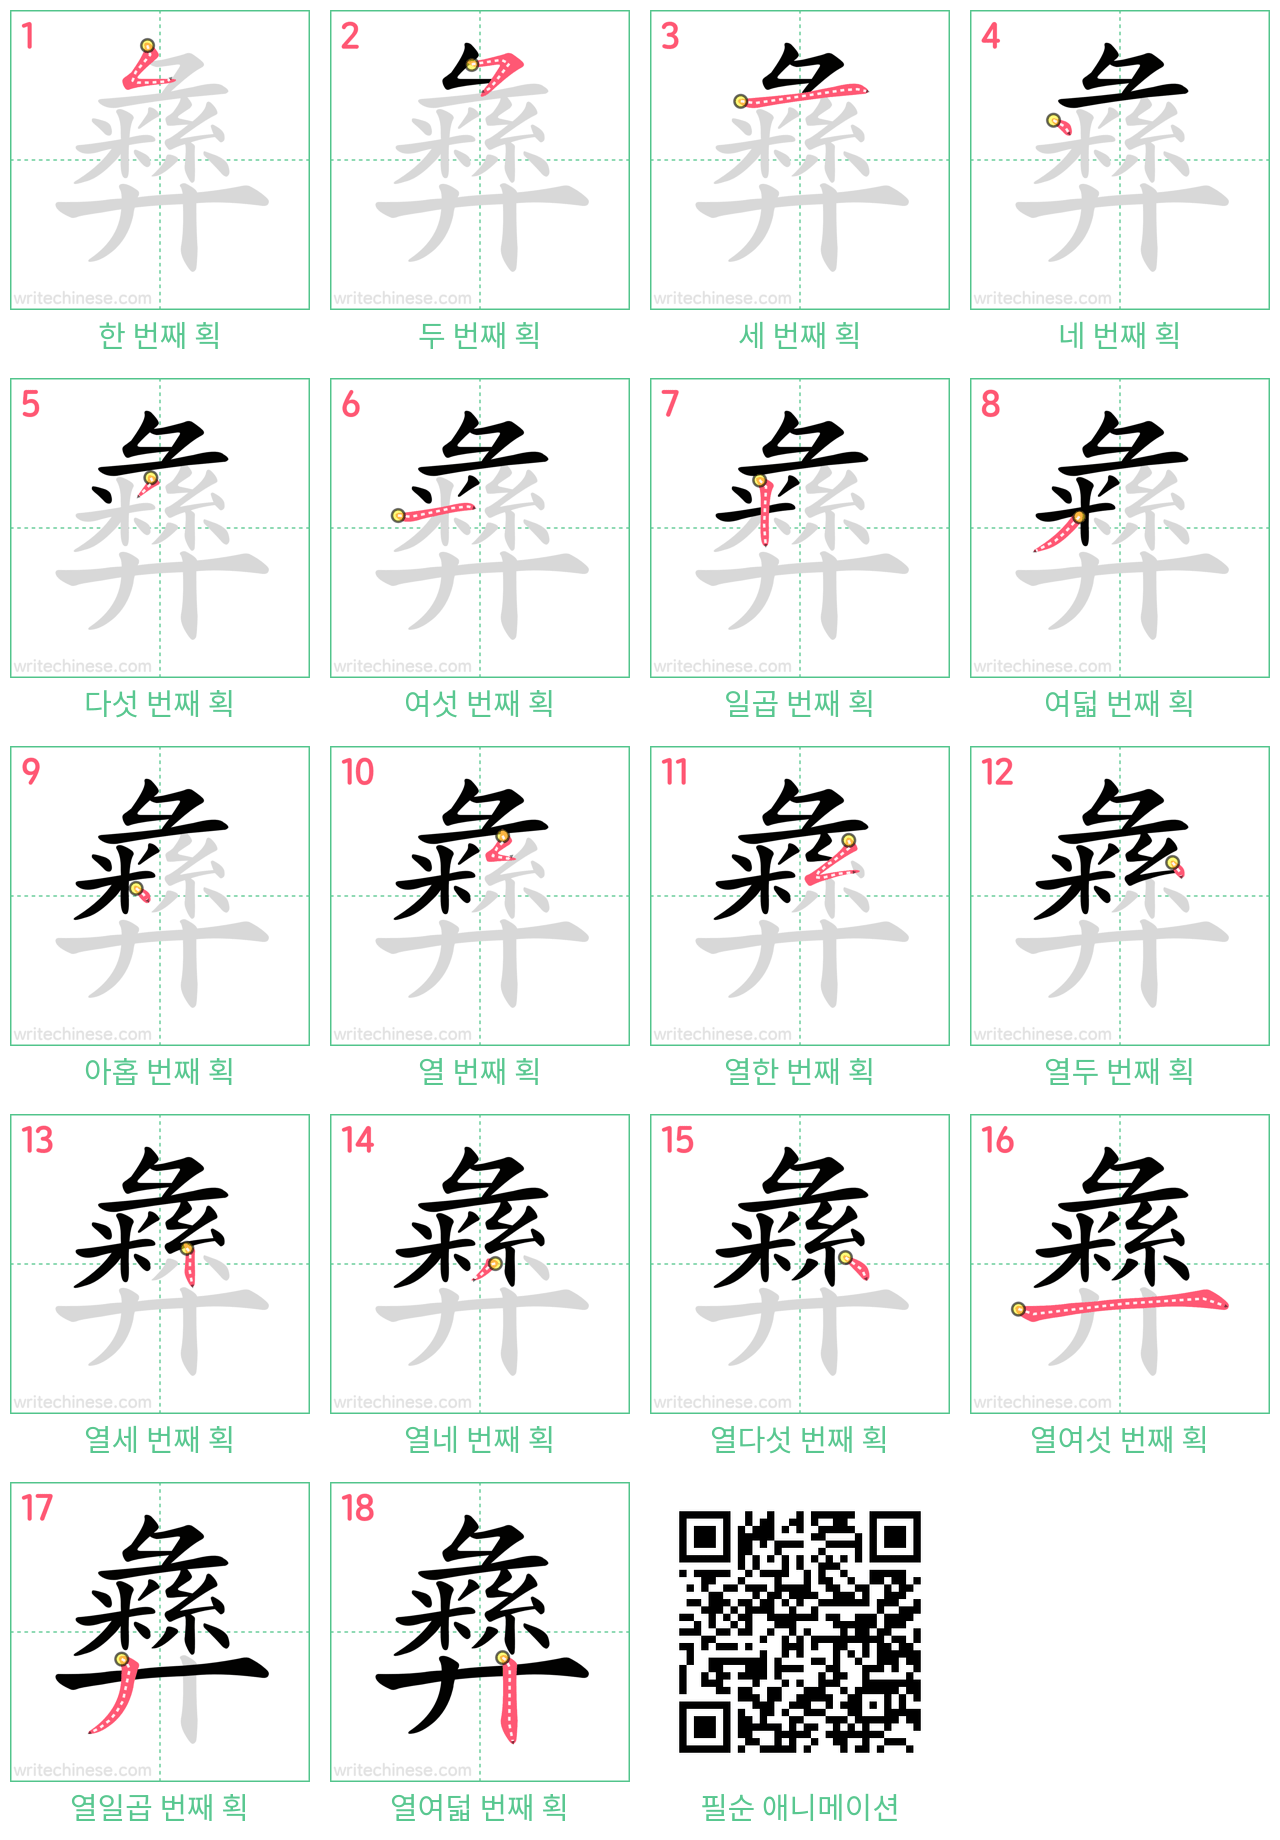 彝 step-by-step stroke order diagrams